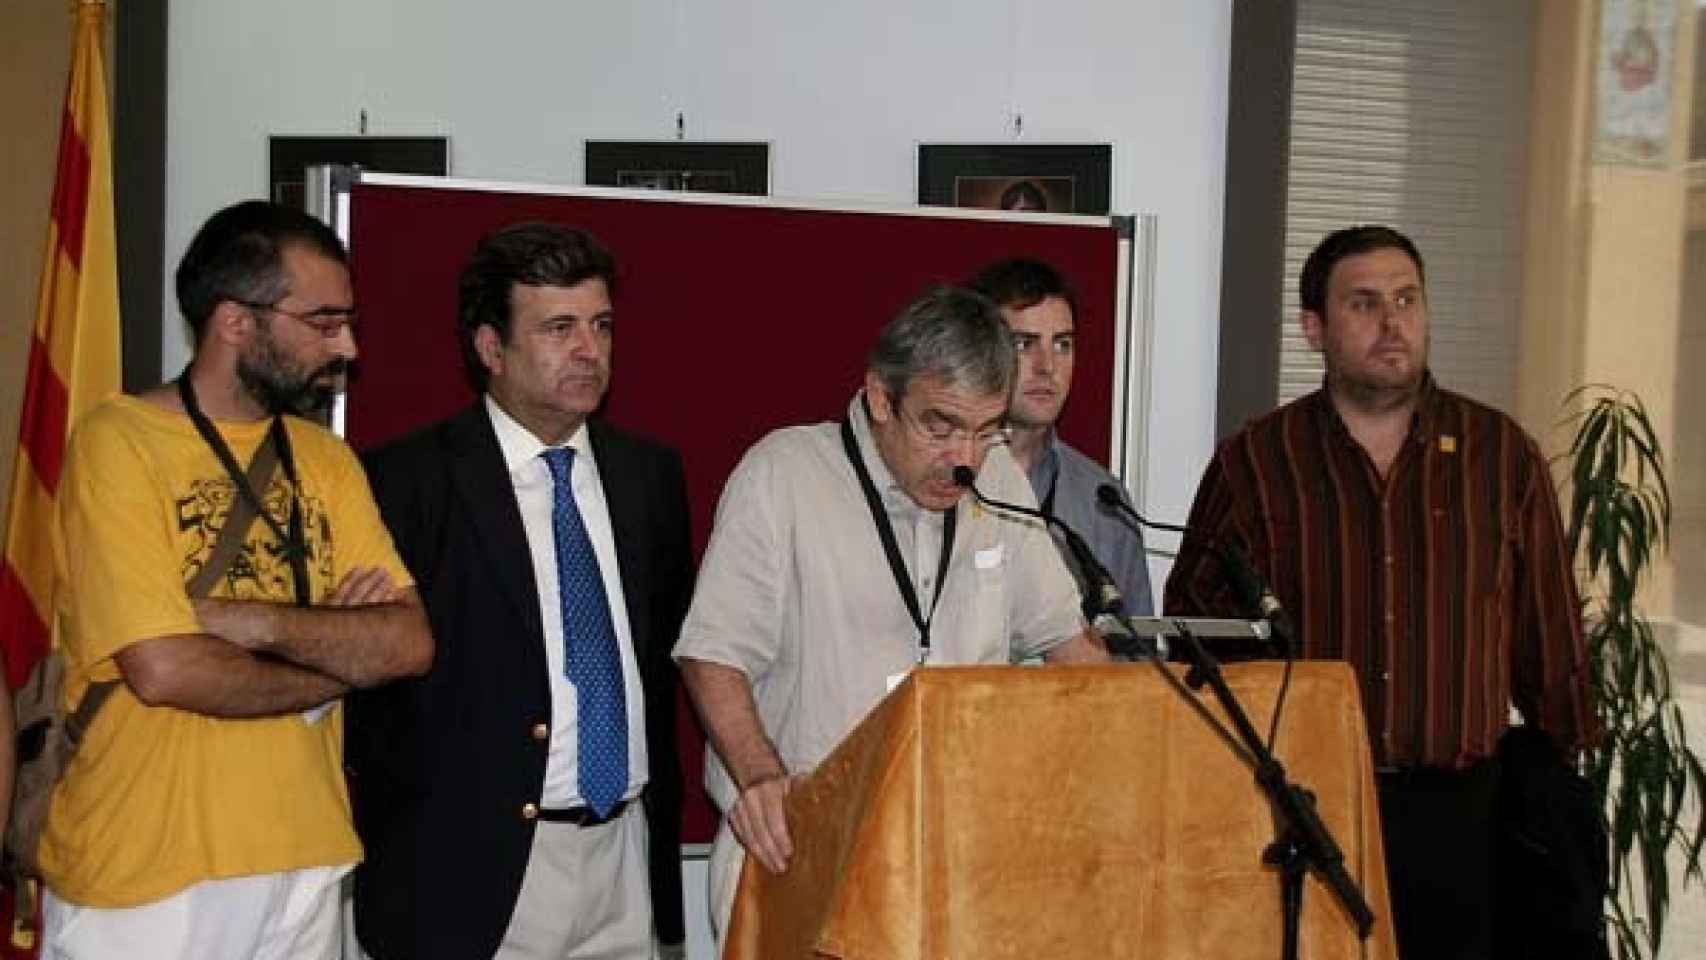 Jordi Bilbeny, del Institut de Nova Història, en el lado izquierdo del atril. Oriol Junqueras, en el lado contrario. La foto es del año 2009, cuando en Arenys de Munt se celebró la primera consulta de la historia por la independencia de Cataluña.